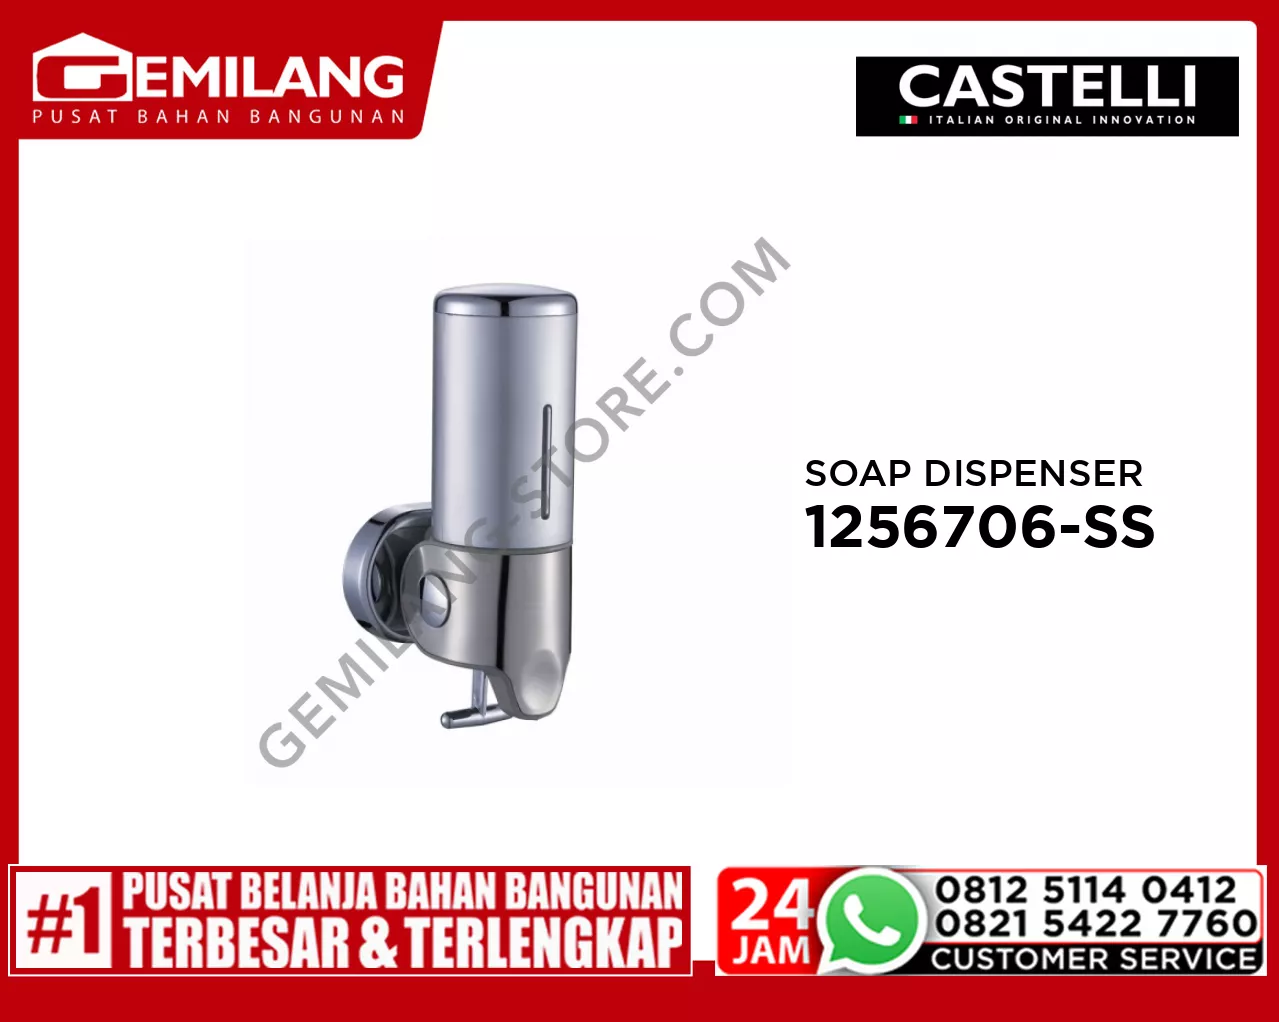 CASTELLI SINGLE SOAP DISPENSER STAINLESS STEEL 1256706-SS